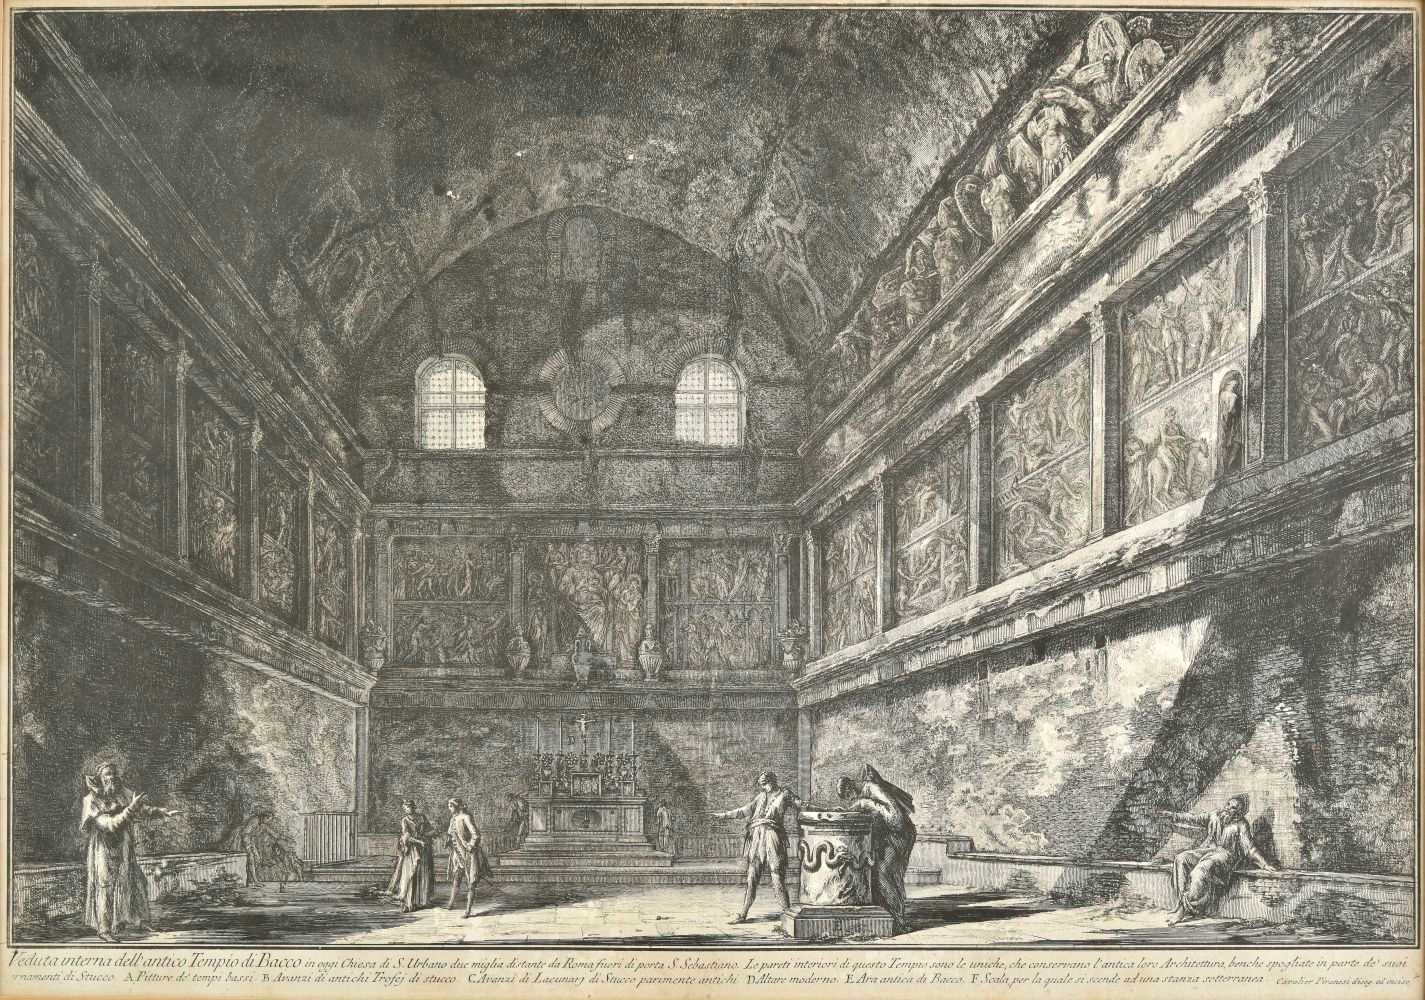 Lot 251 - Piranesi, Giovanni Battista, 1720-1778, Veduta interna dell'antico Tempio di Bacco